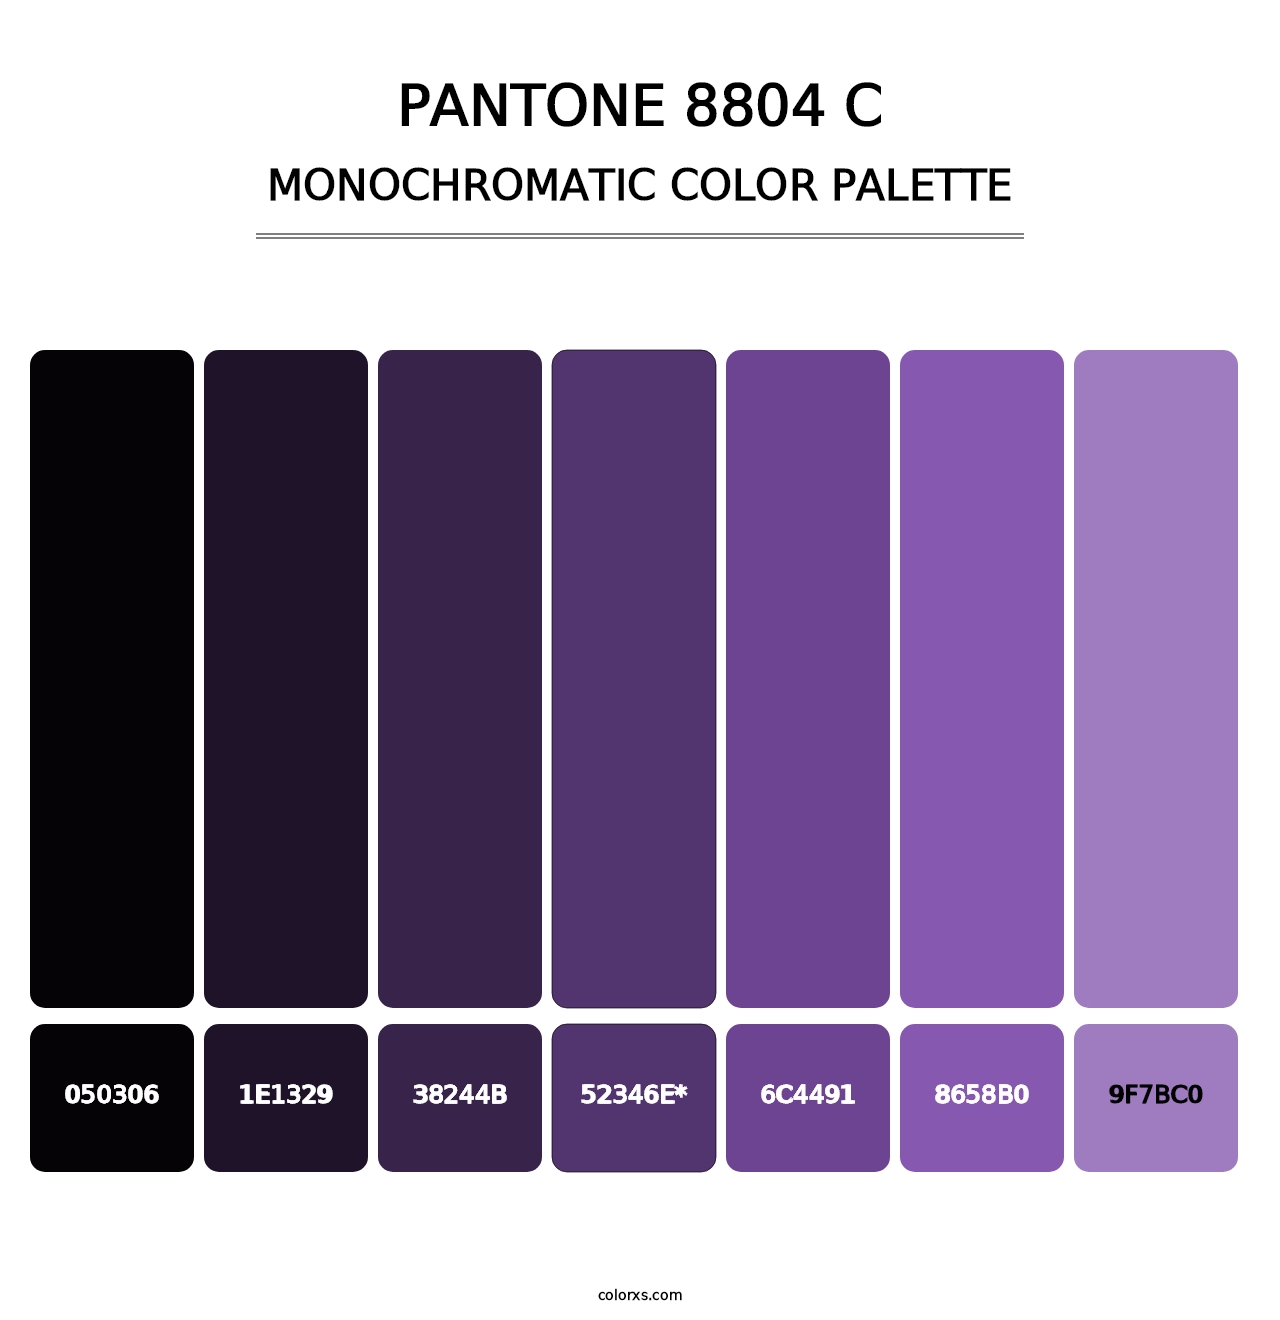 PANTONE 8804 C - Monochromatic Color Palette